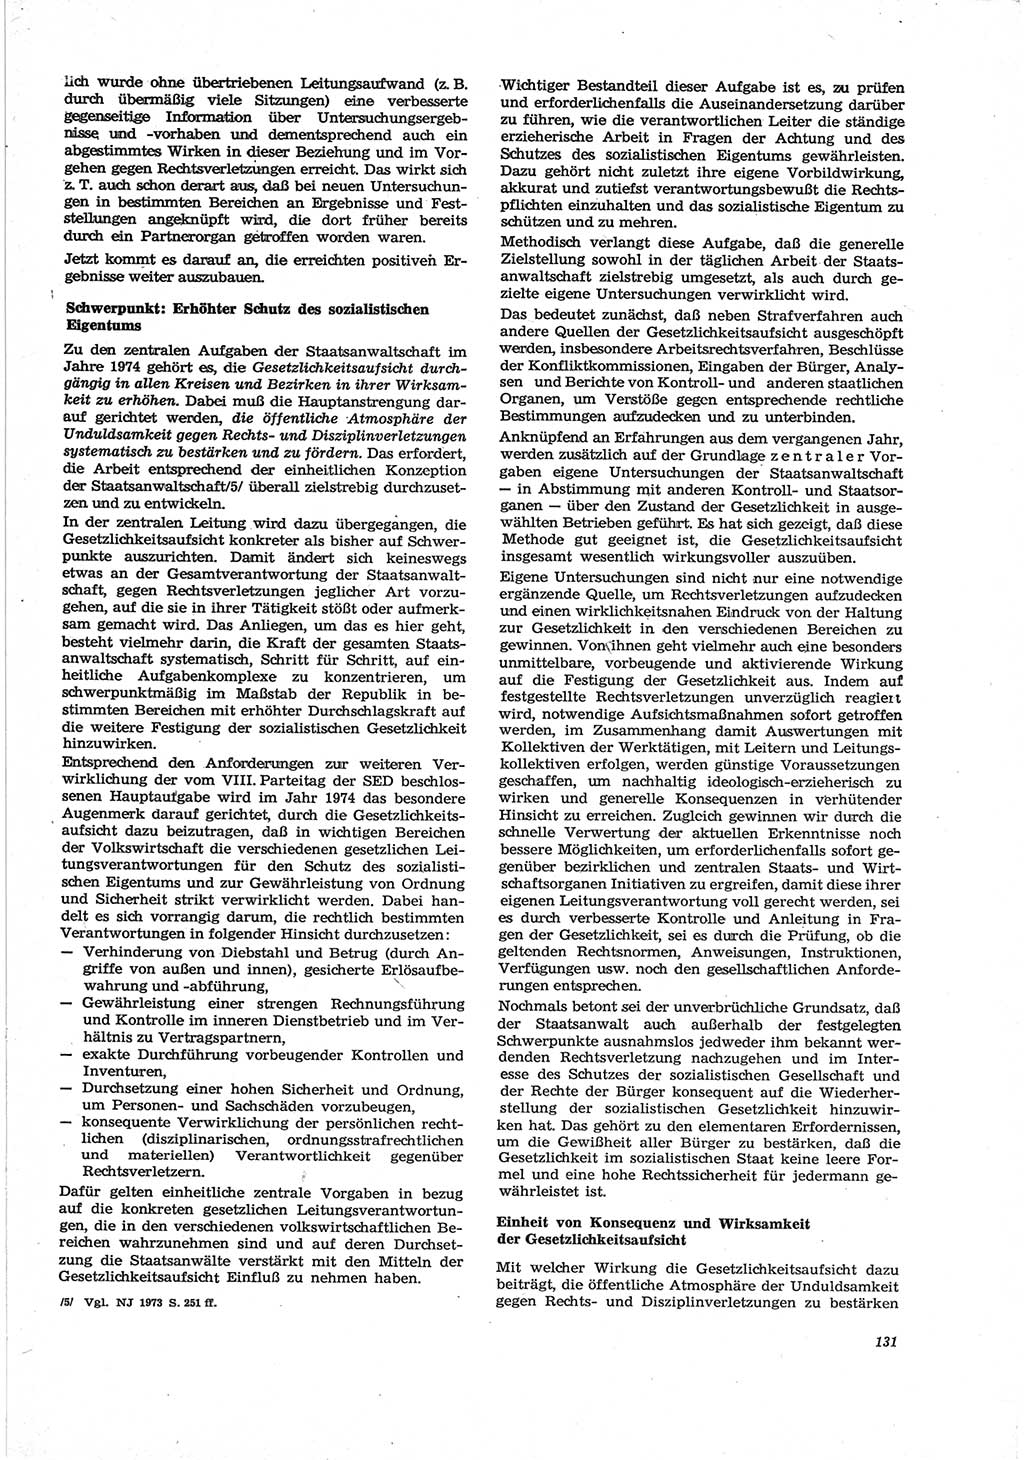 Neue Justiz (NJ), Zeitschrift für Recht und Rechtswissenschaft [Deutsche Demokratische Republik (DDR)], 28. Jahrgang 1974, Seite 131 (NJ DDR 1974, S. 131)